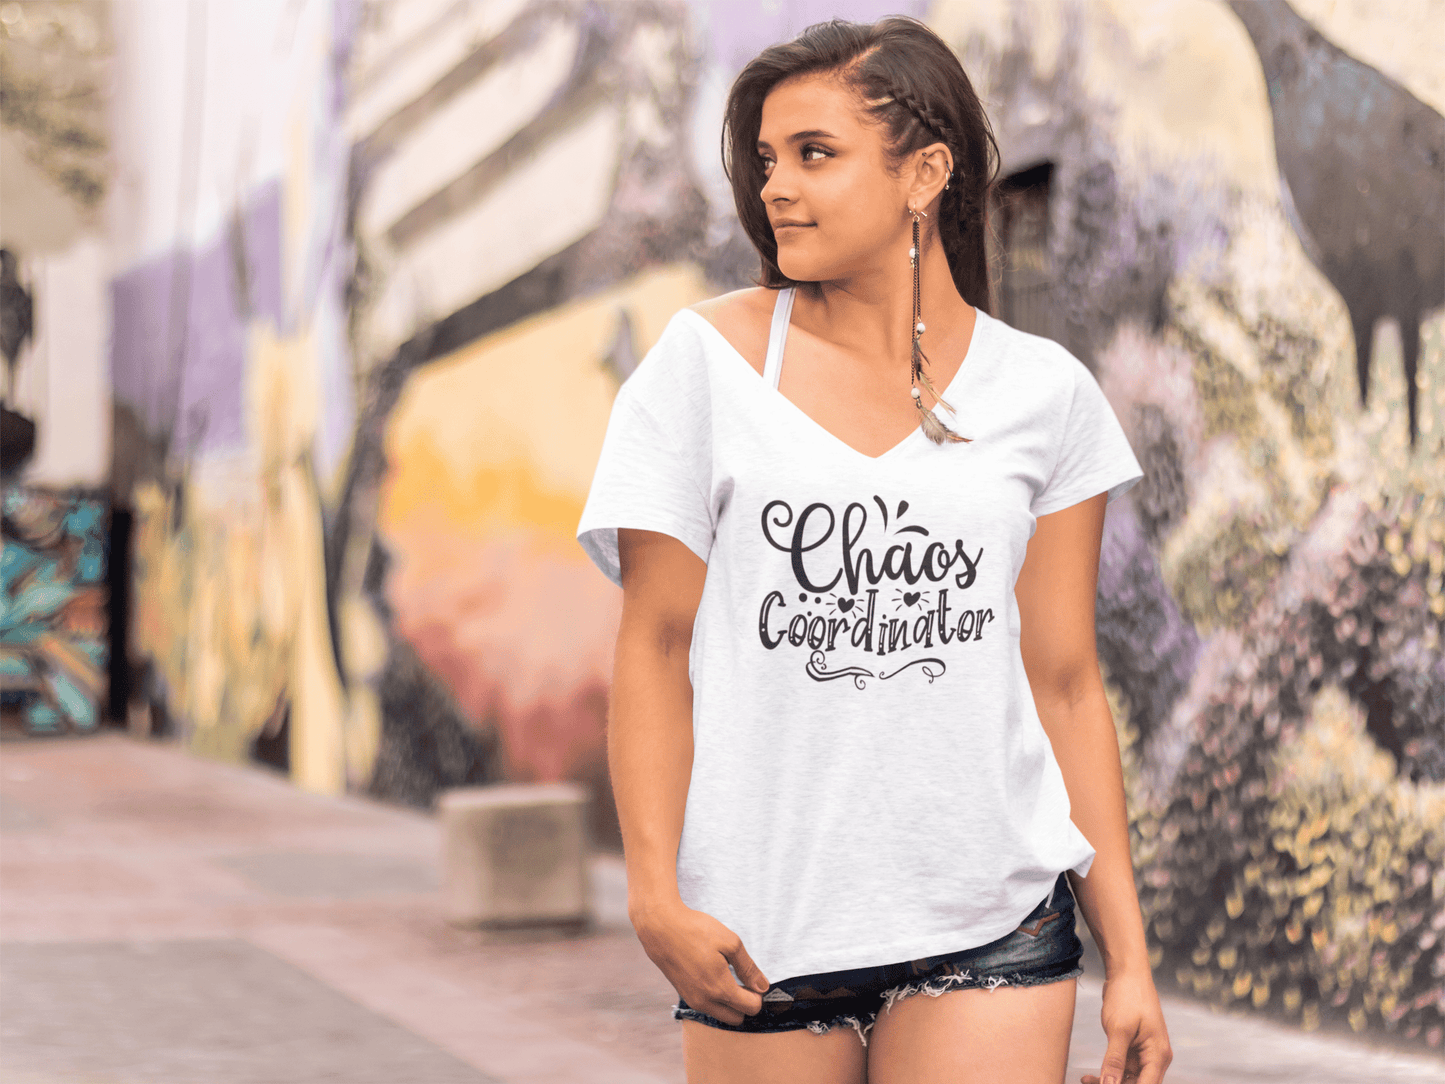 ULTRABASIC Women's T-Shirt Chaos Coordinator - Short Sleeve Tee Shirt Tops